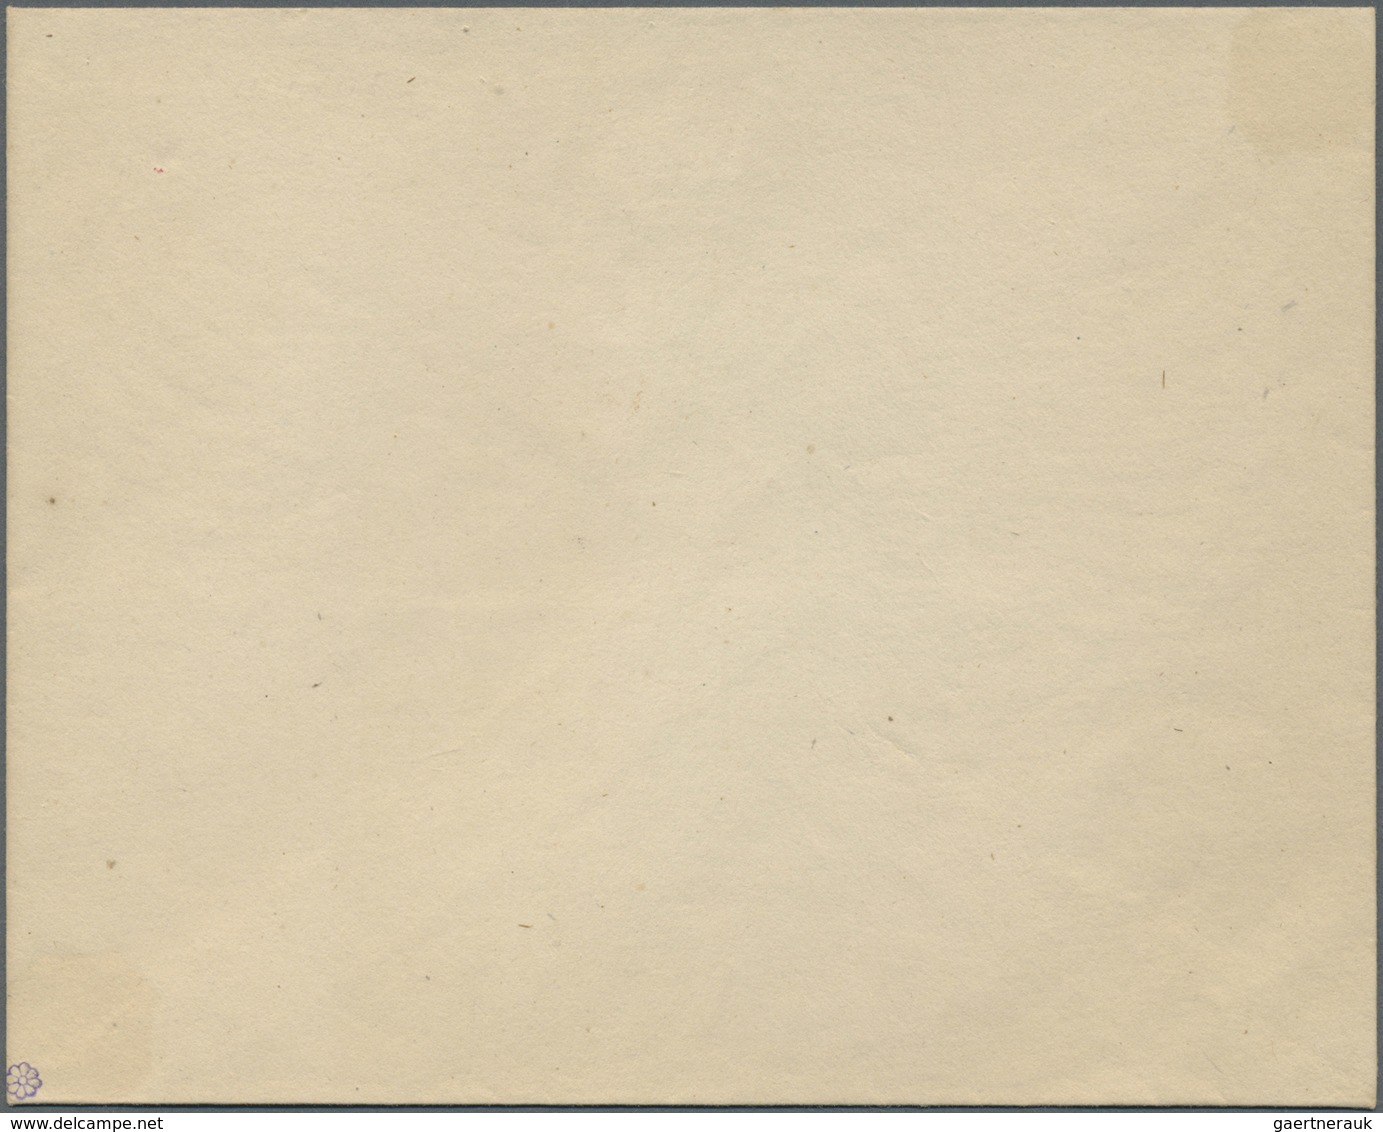 GA Russland - Ganzsachen: 1848, First Issue 30 + 1 K. Carmine Envelope, Unused, Slight Toned, Otherwise - Postwaardestukken